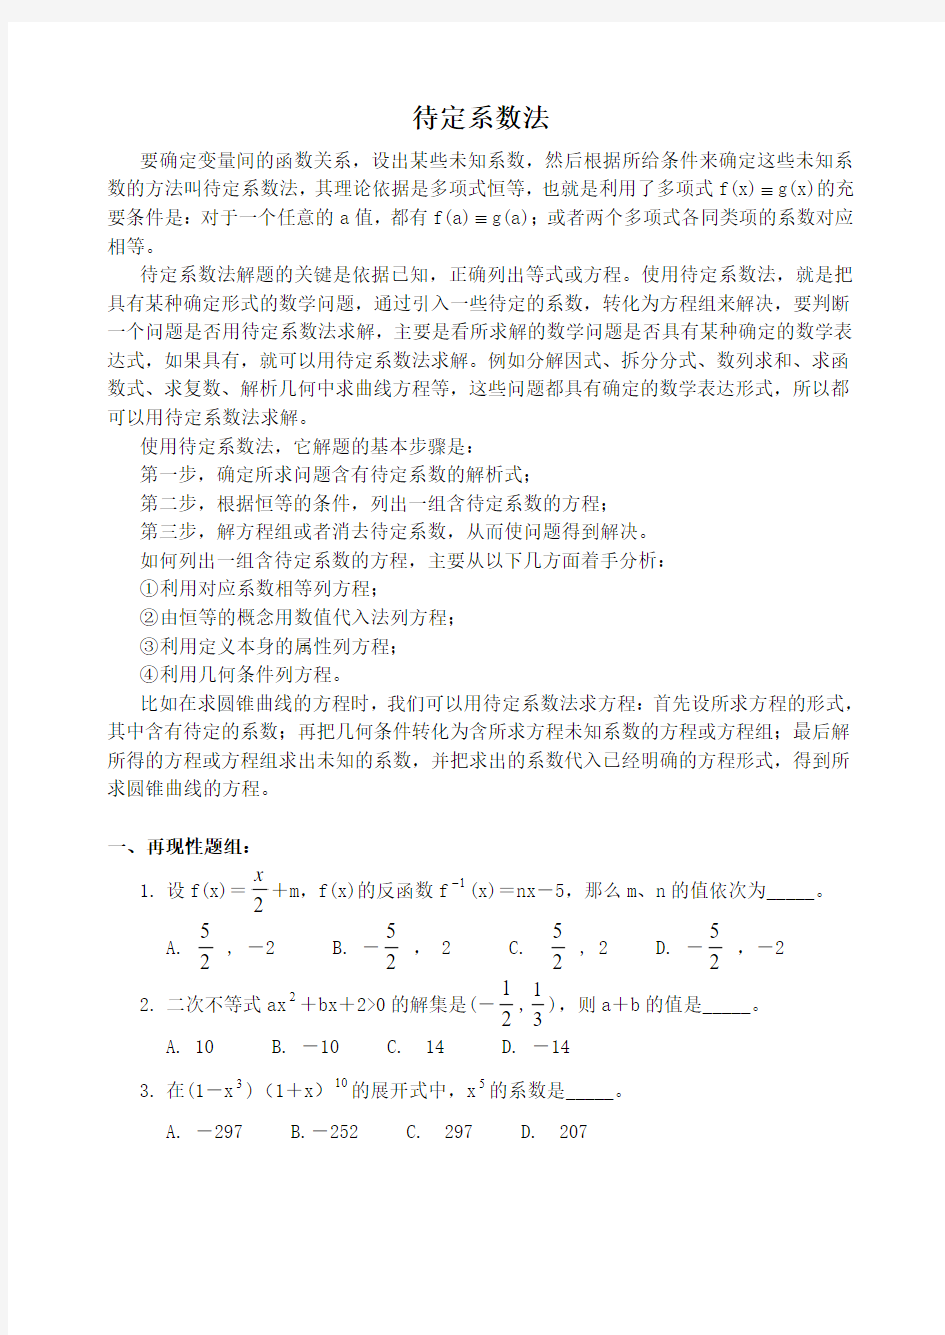 高中数学解题方法(3)待定系数法